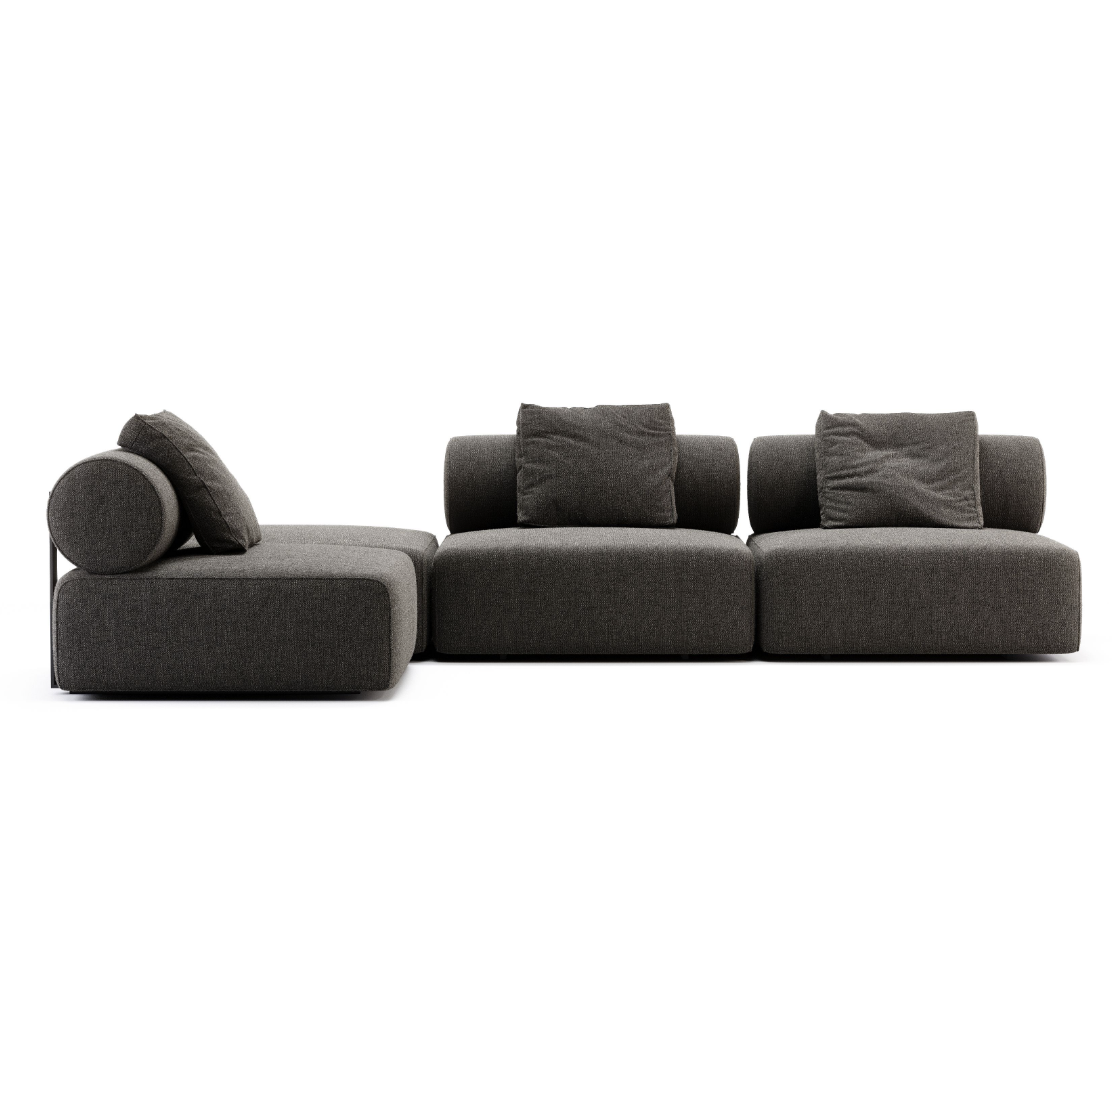 Domkapa Shinto Sofa - Customisable | Modern Furniture + Decor